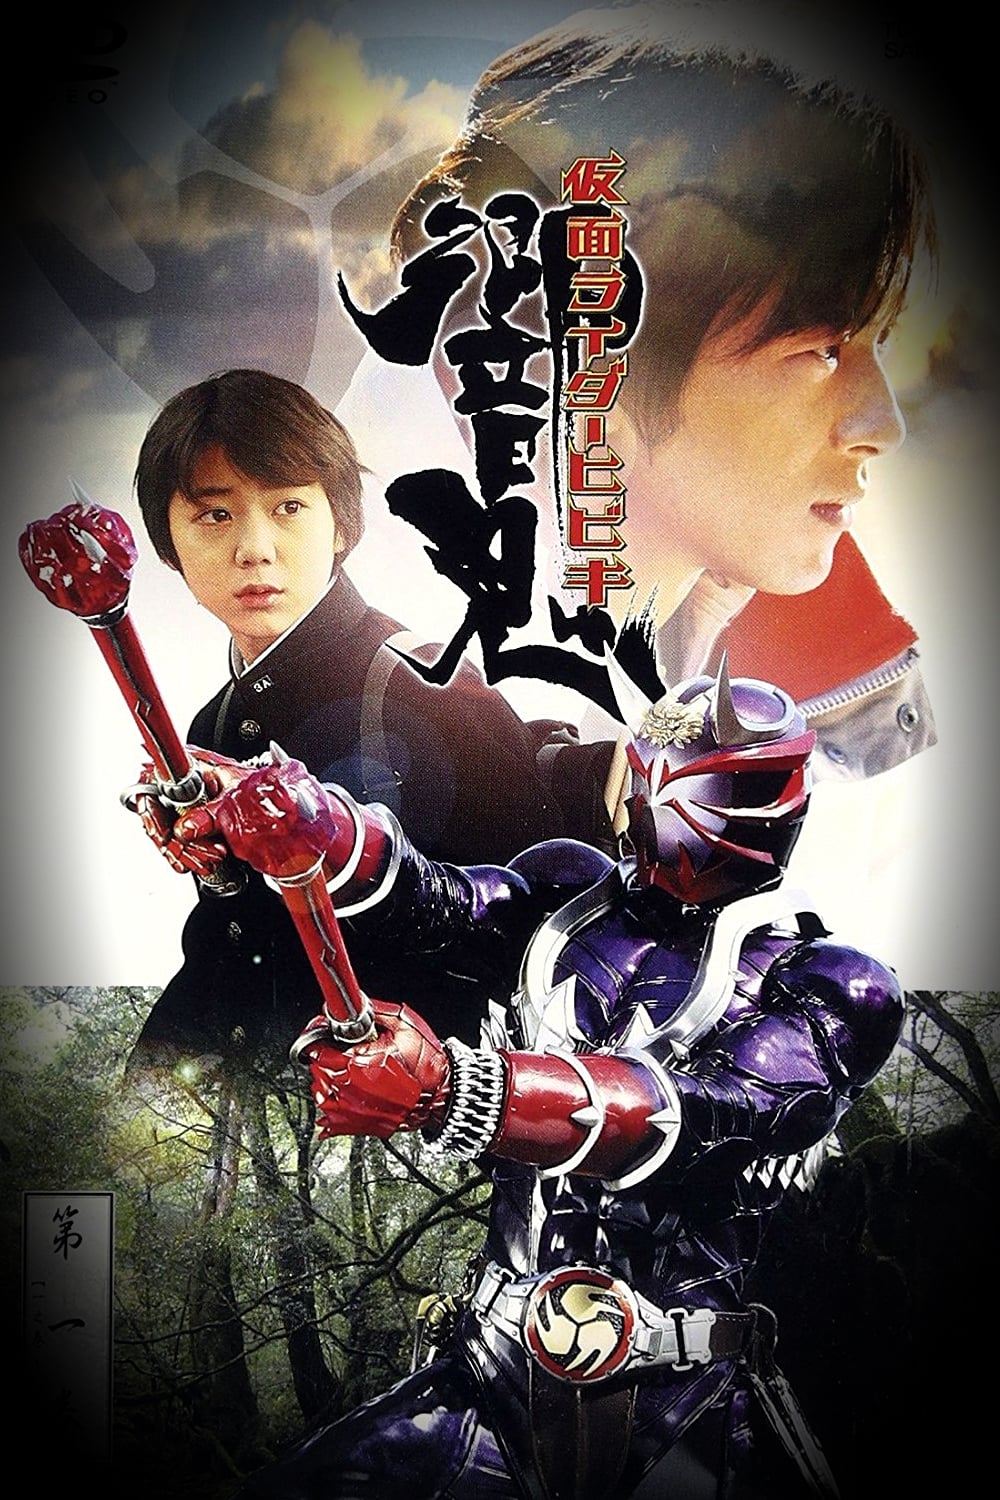 Kamen Rider Season 15